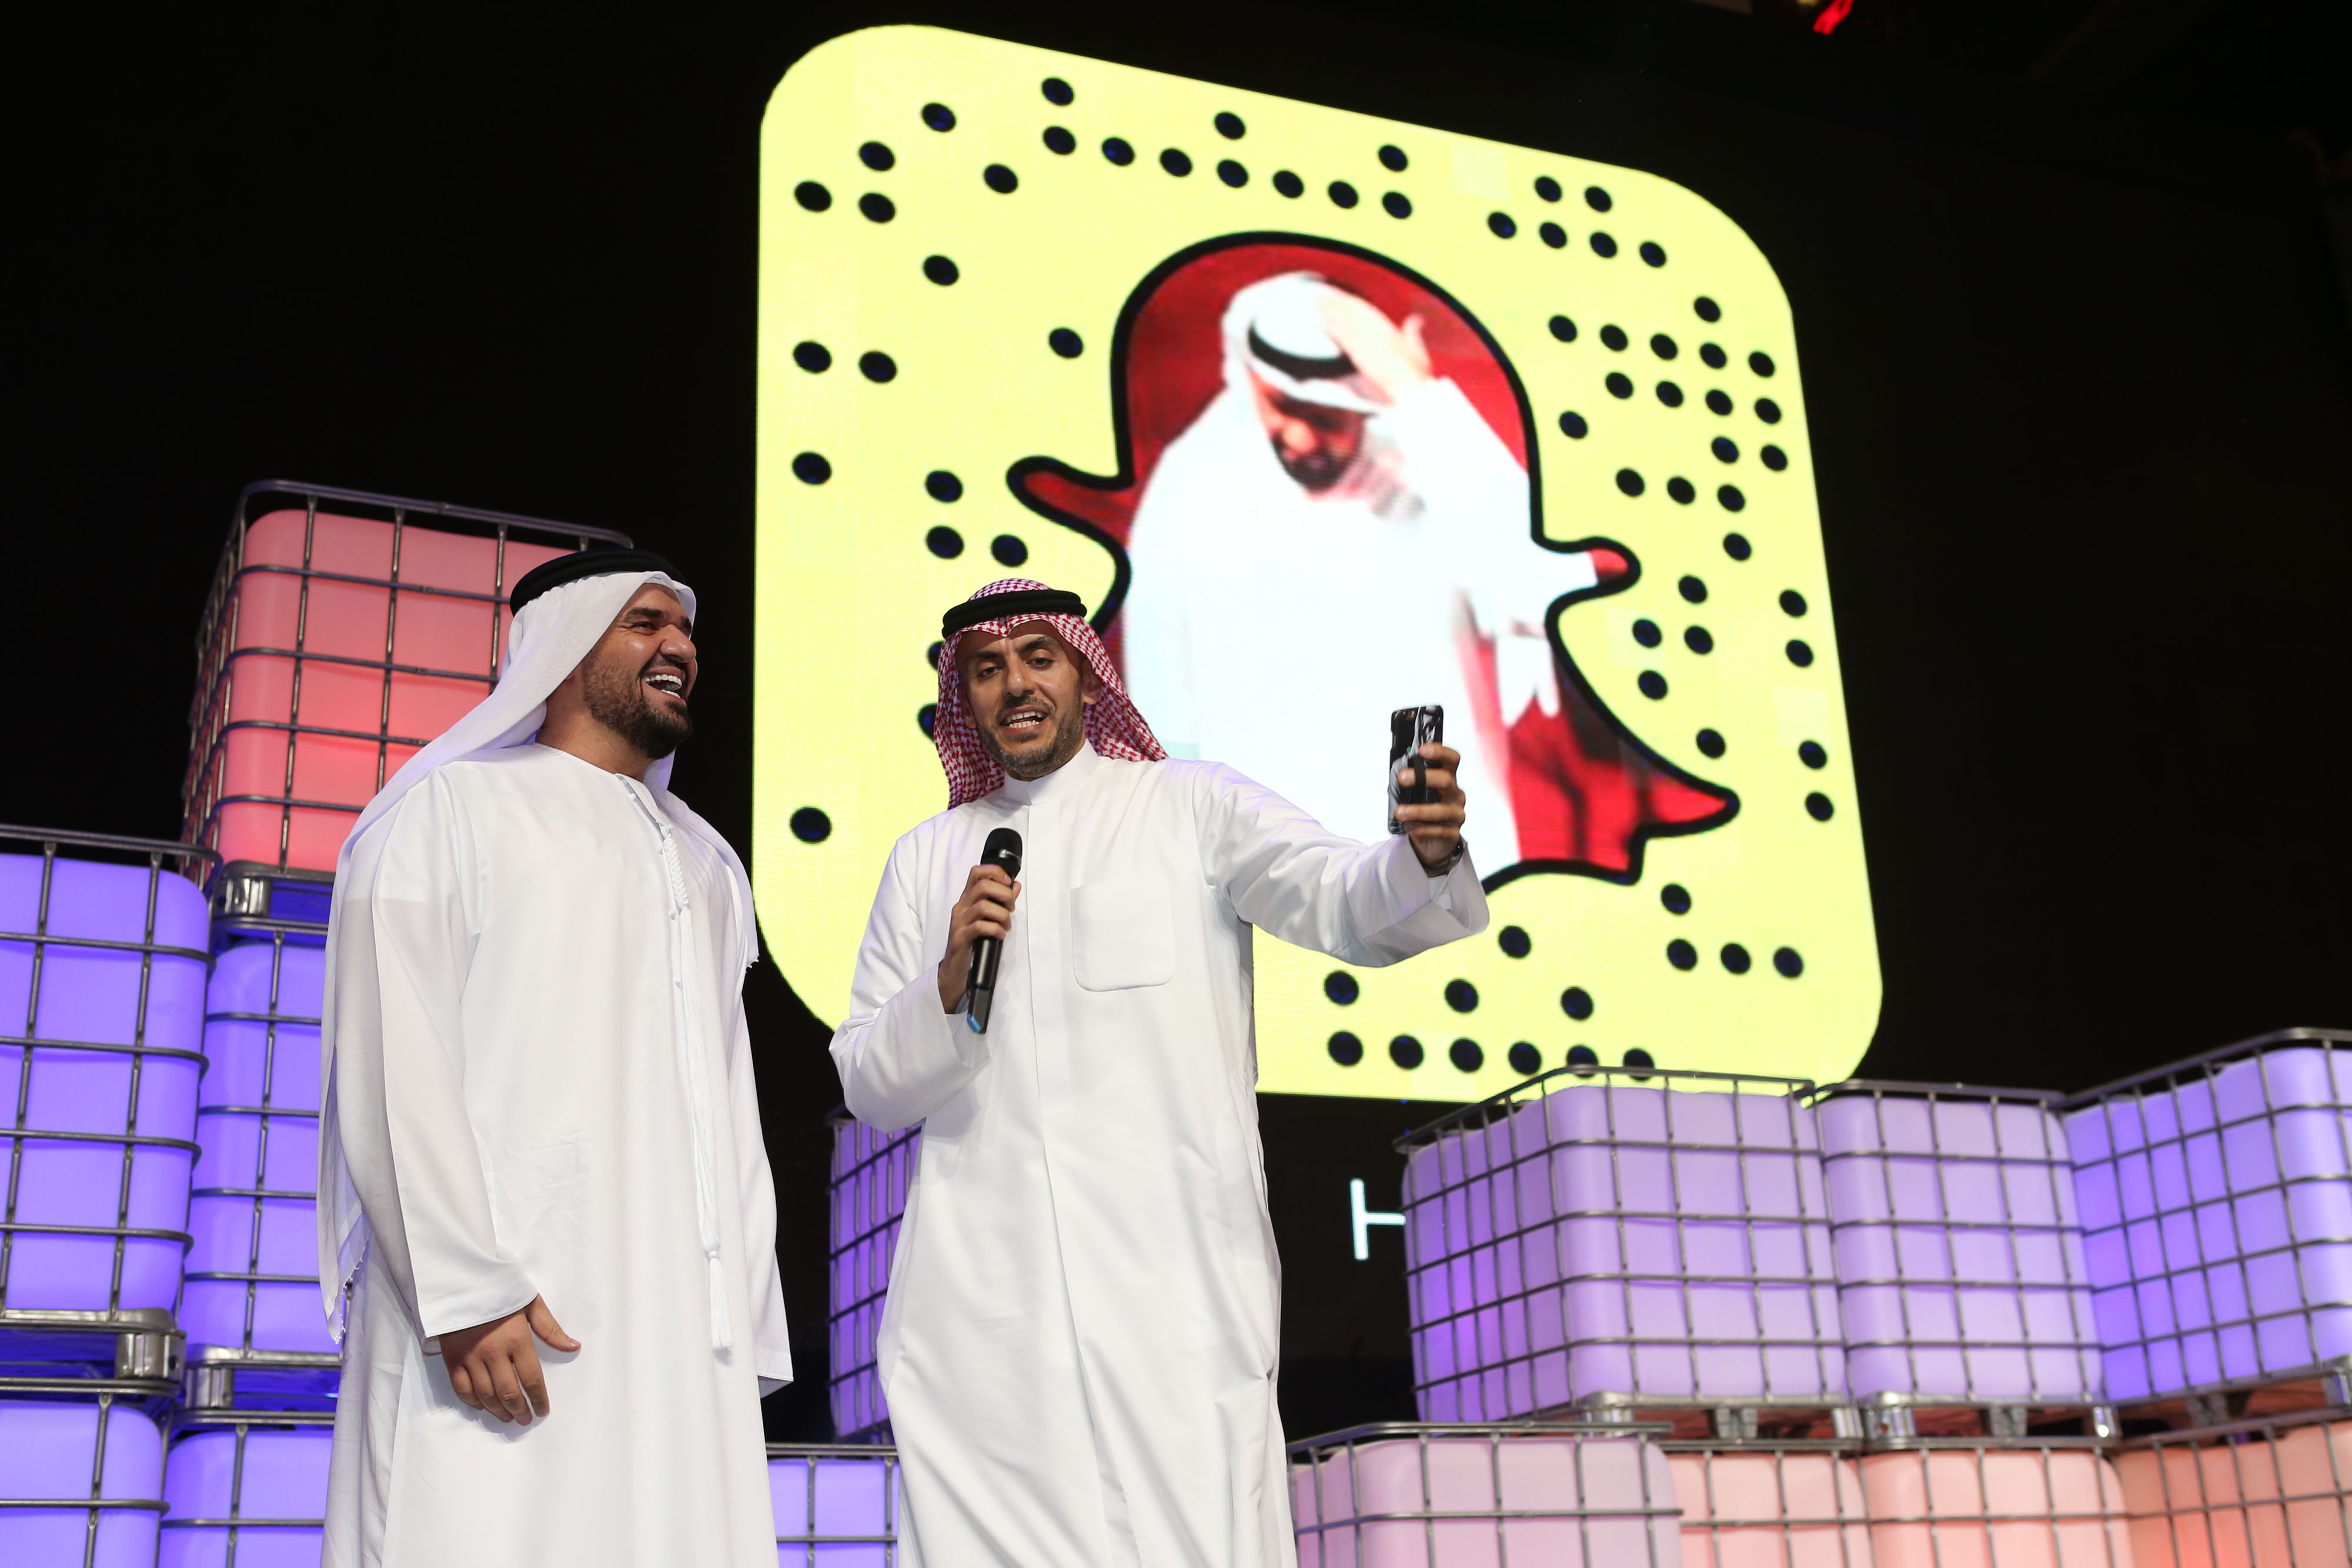 صورة السابقة الأولى في الشرق الأوسط والعالم العربي  حسين الجسمي يدشن حسابه في SnapChat أمام أكثر من 200 مليون مشاهد في العالم